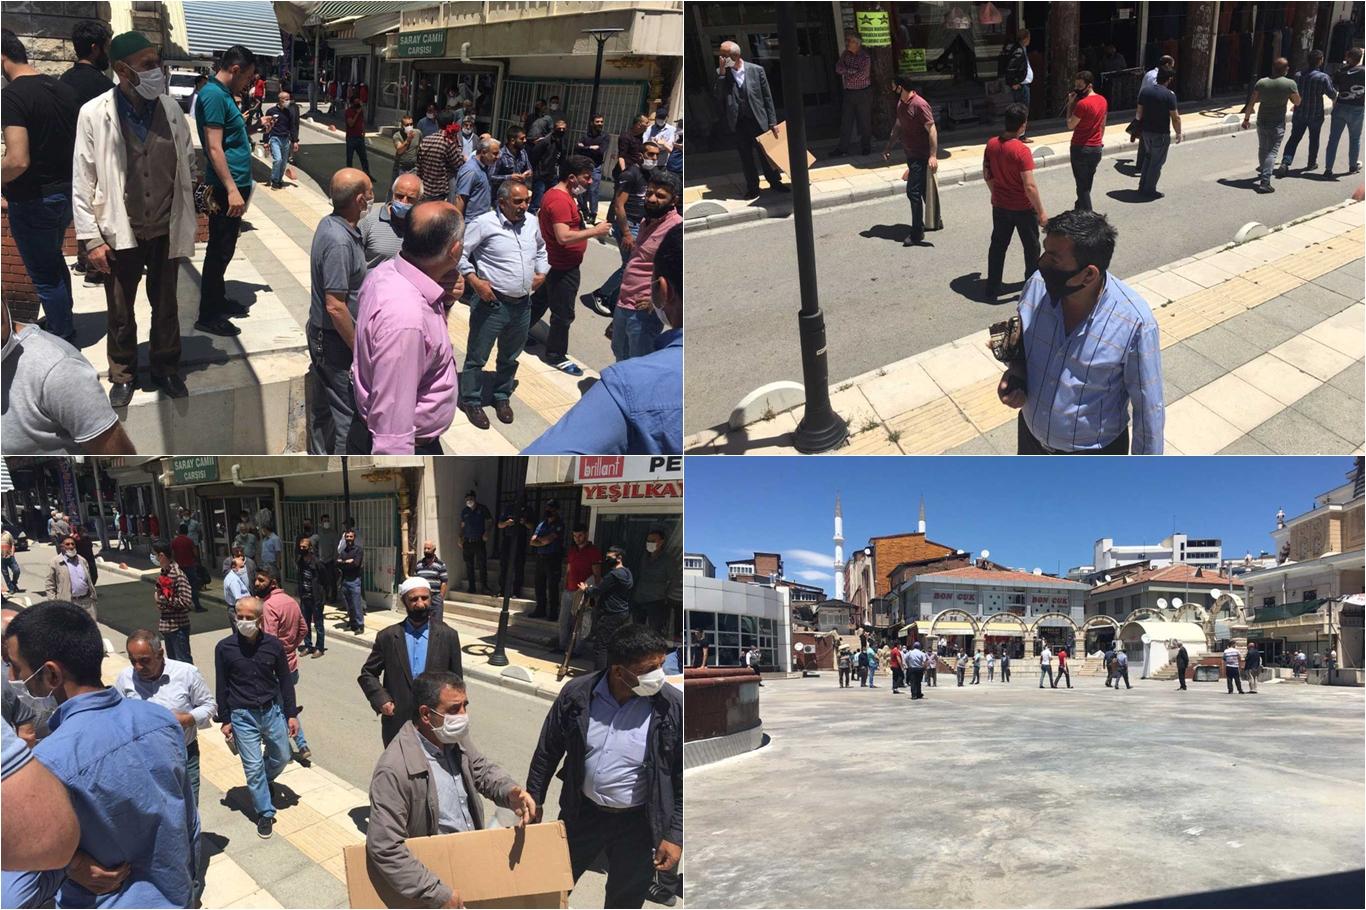 Elazığ'da bazı vatandaşlar haftalardır bekledikleri Cuma namazını kılamadılar